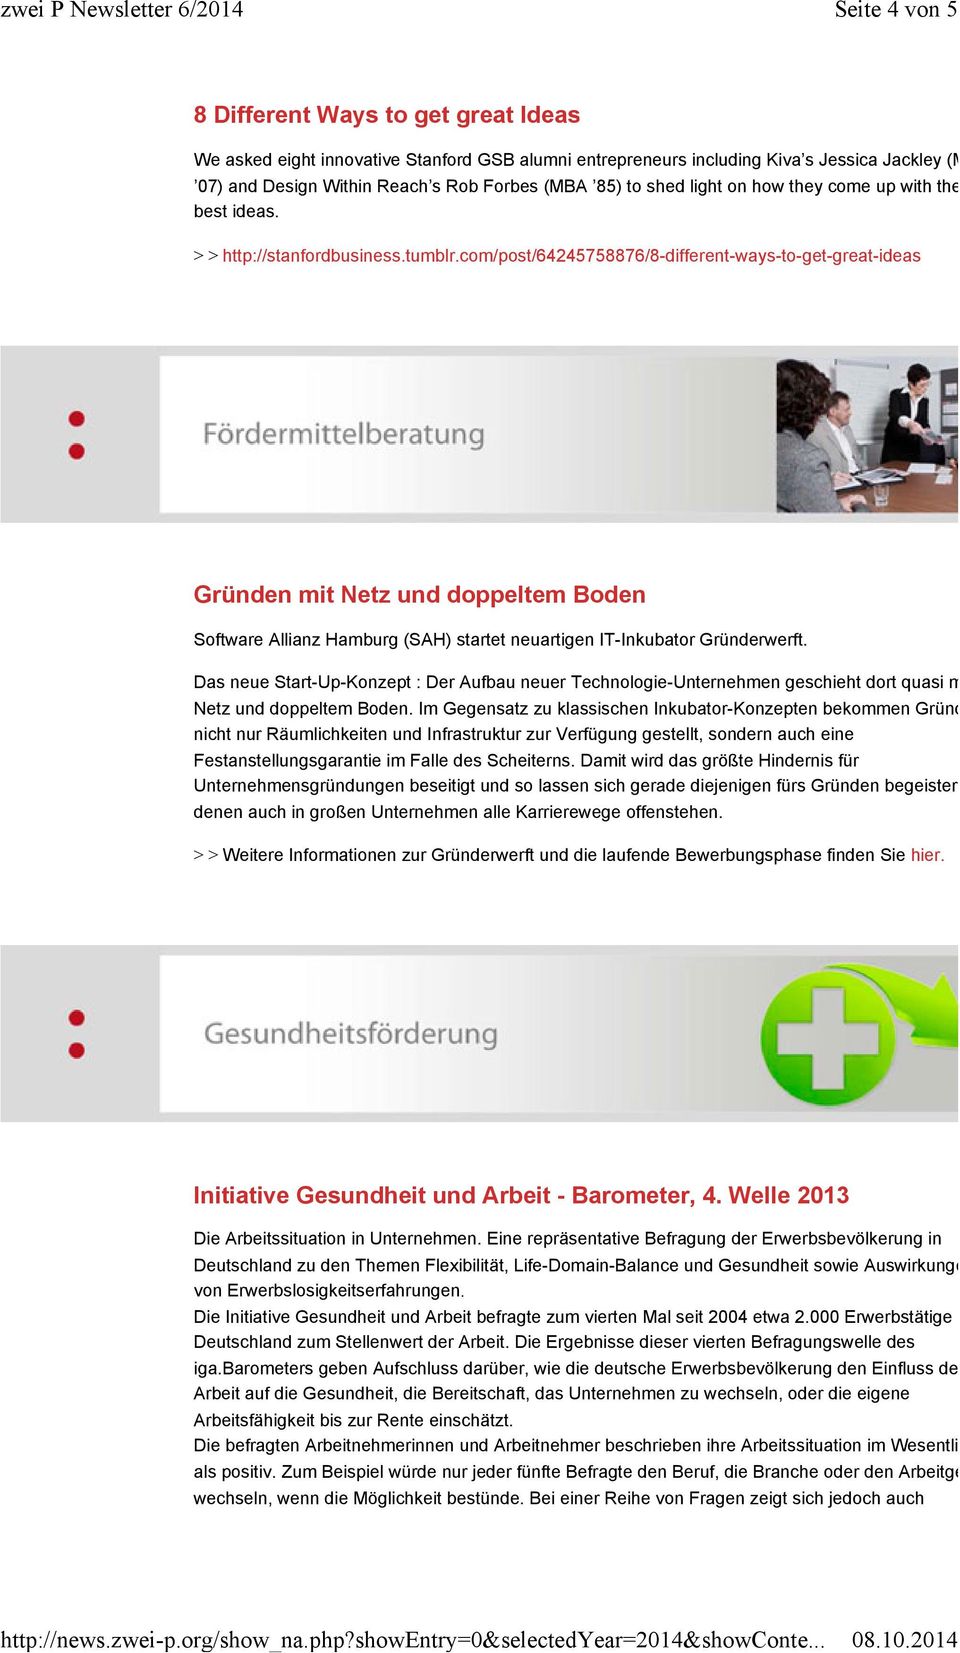 com/post/64245758876/8-different-ways-to-get-great-ideas Gründen mit Netz und doppeltem Boden Software Allianz Hamburg (SAH) startet neuartigen IT-Inkubator Gründerwerft.